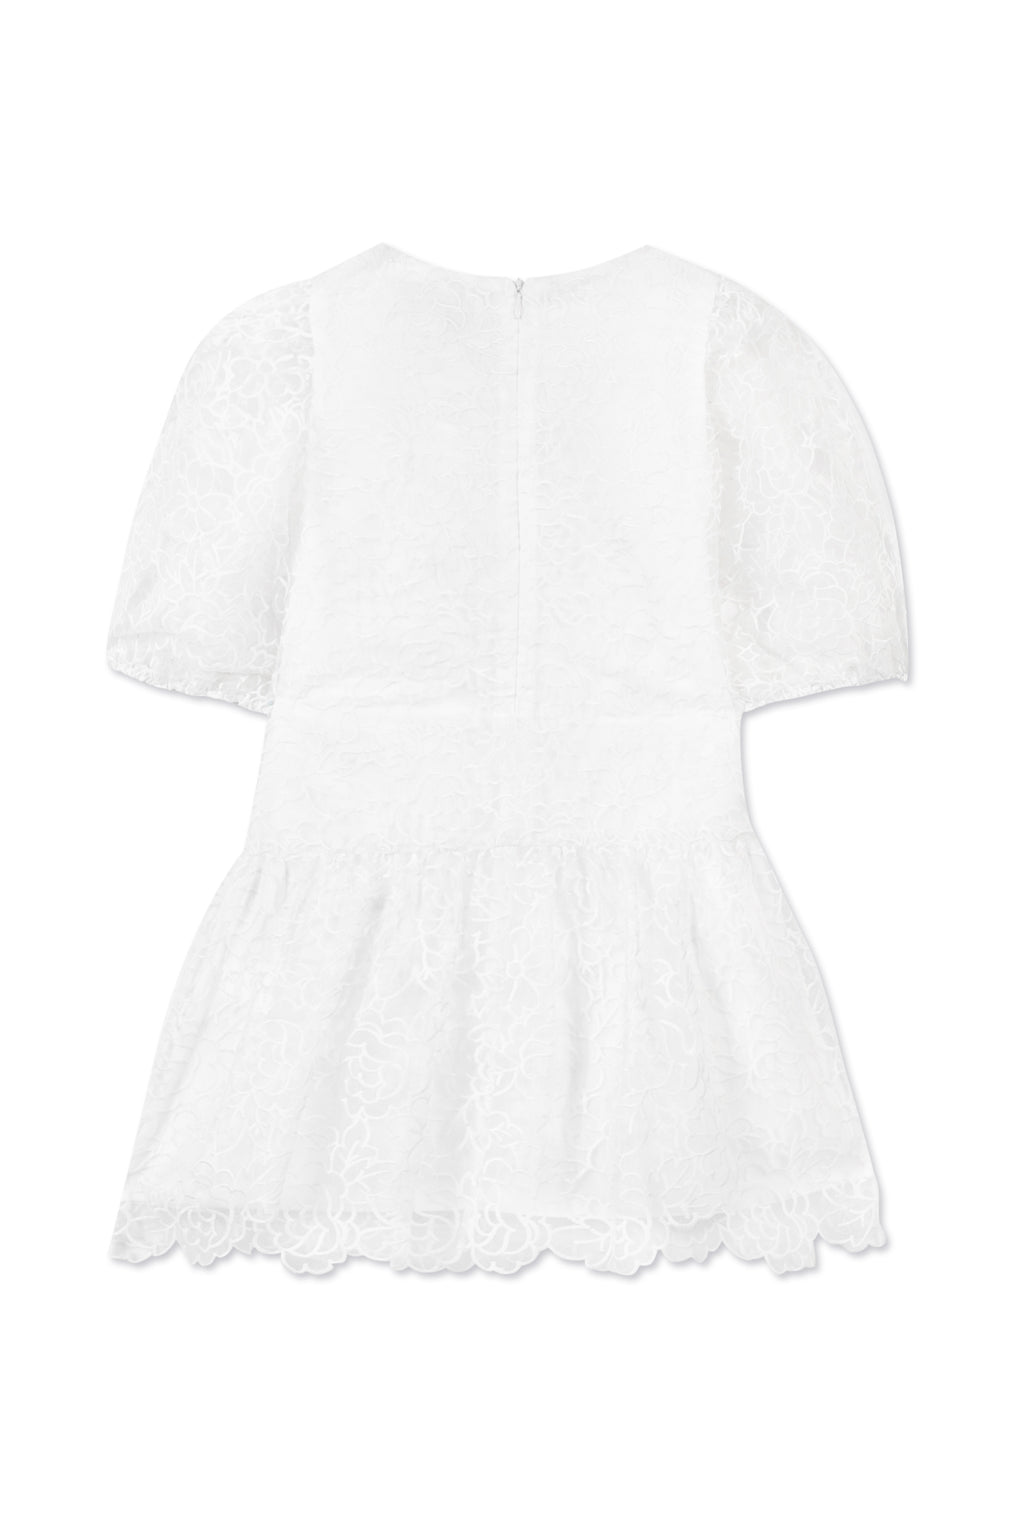 Dress - White organza